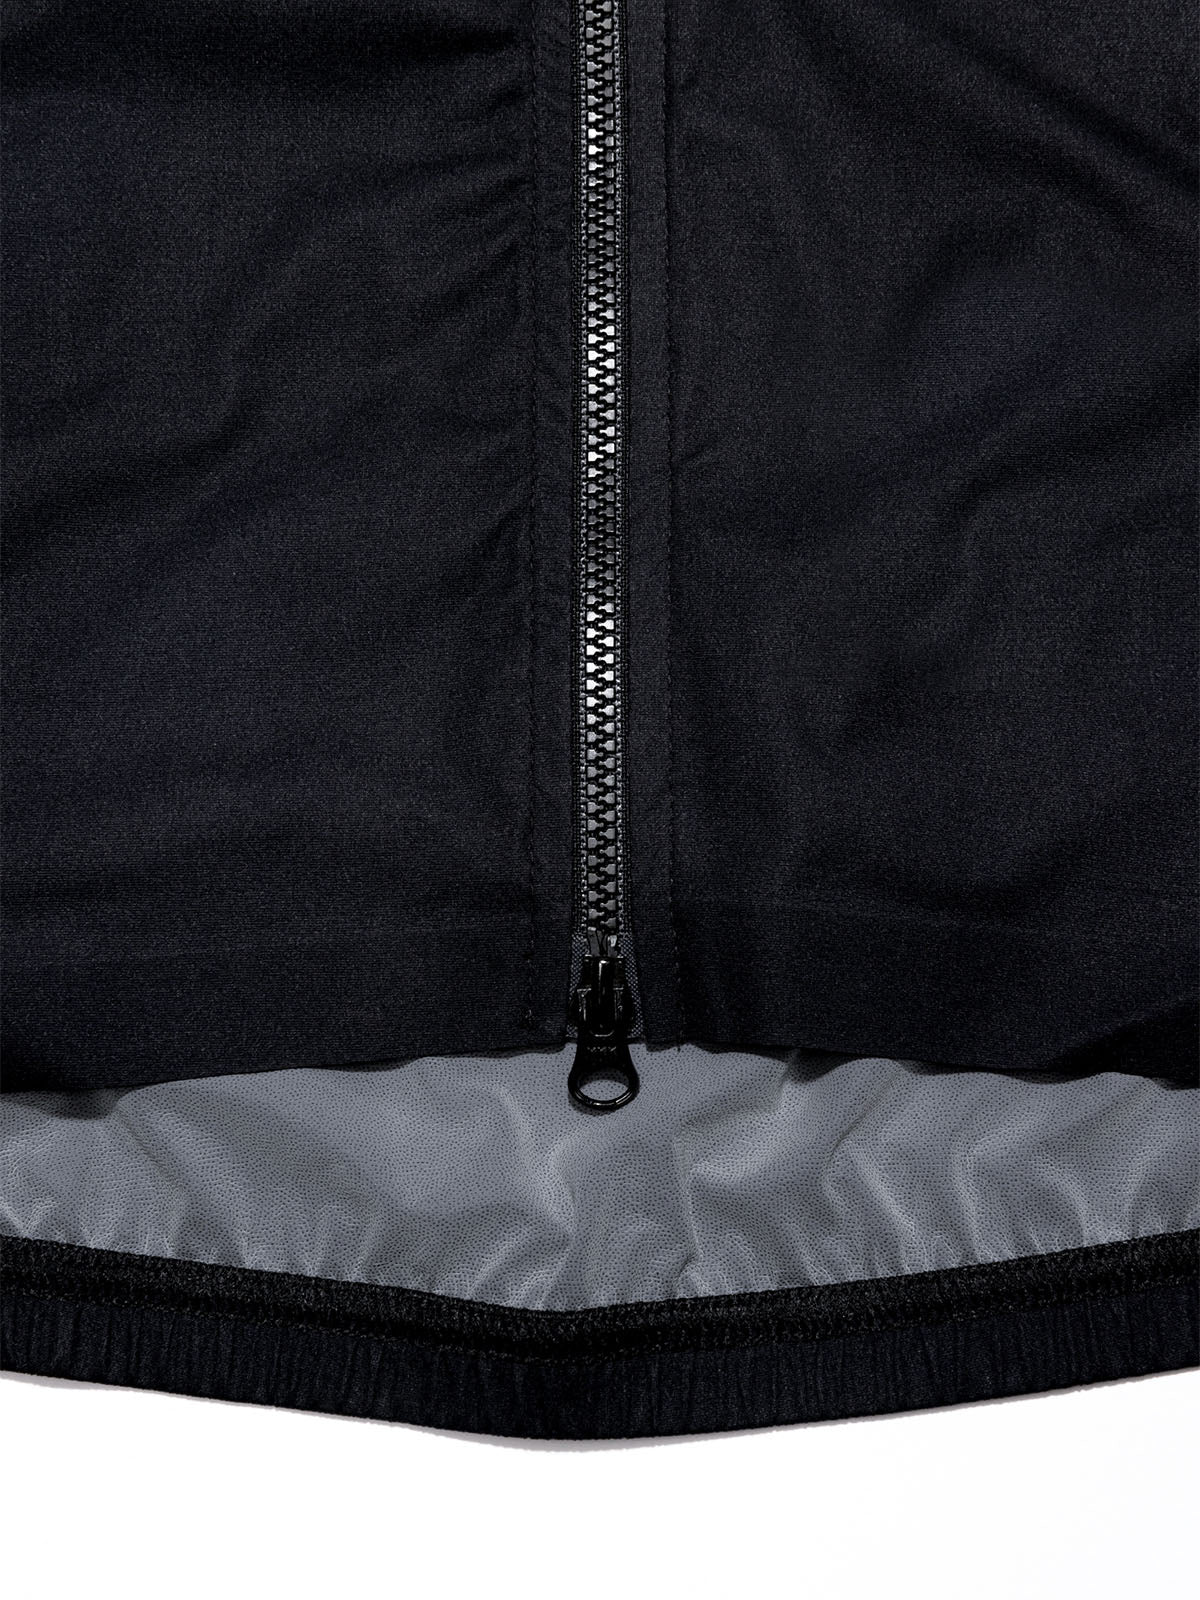 Altosphere Jacket von Mission Workshop - Wetterfeste Taschen & Technische Bekleidung - San Francisco & Los Angeles - Für die Ewigkeit gebaut - Garantiert